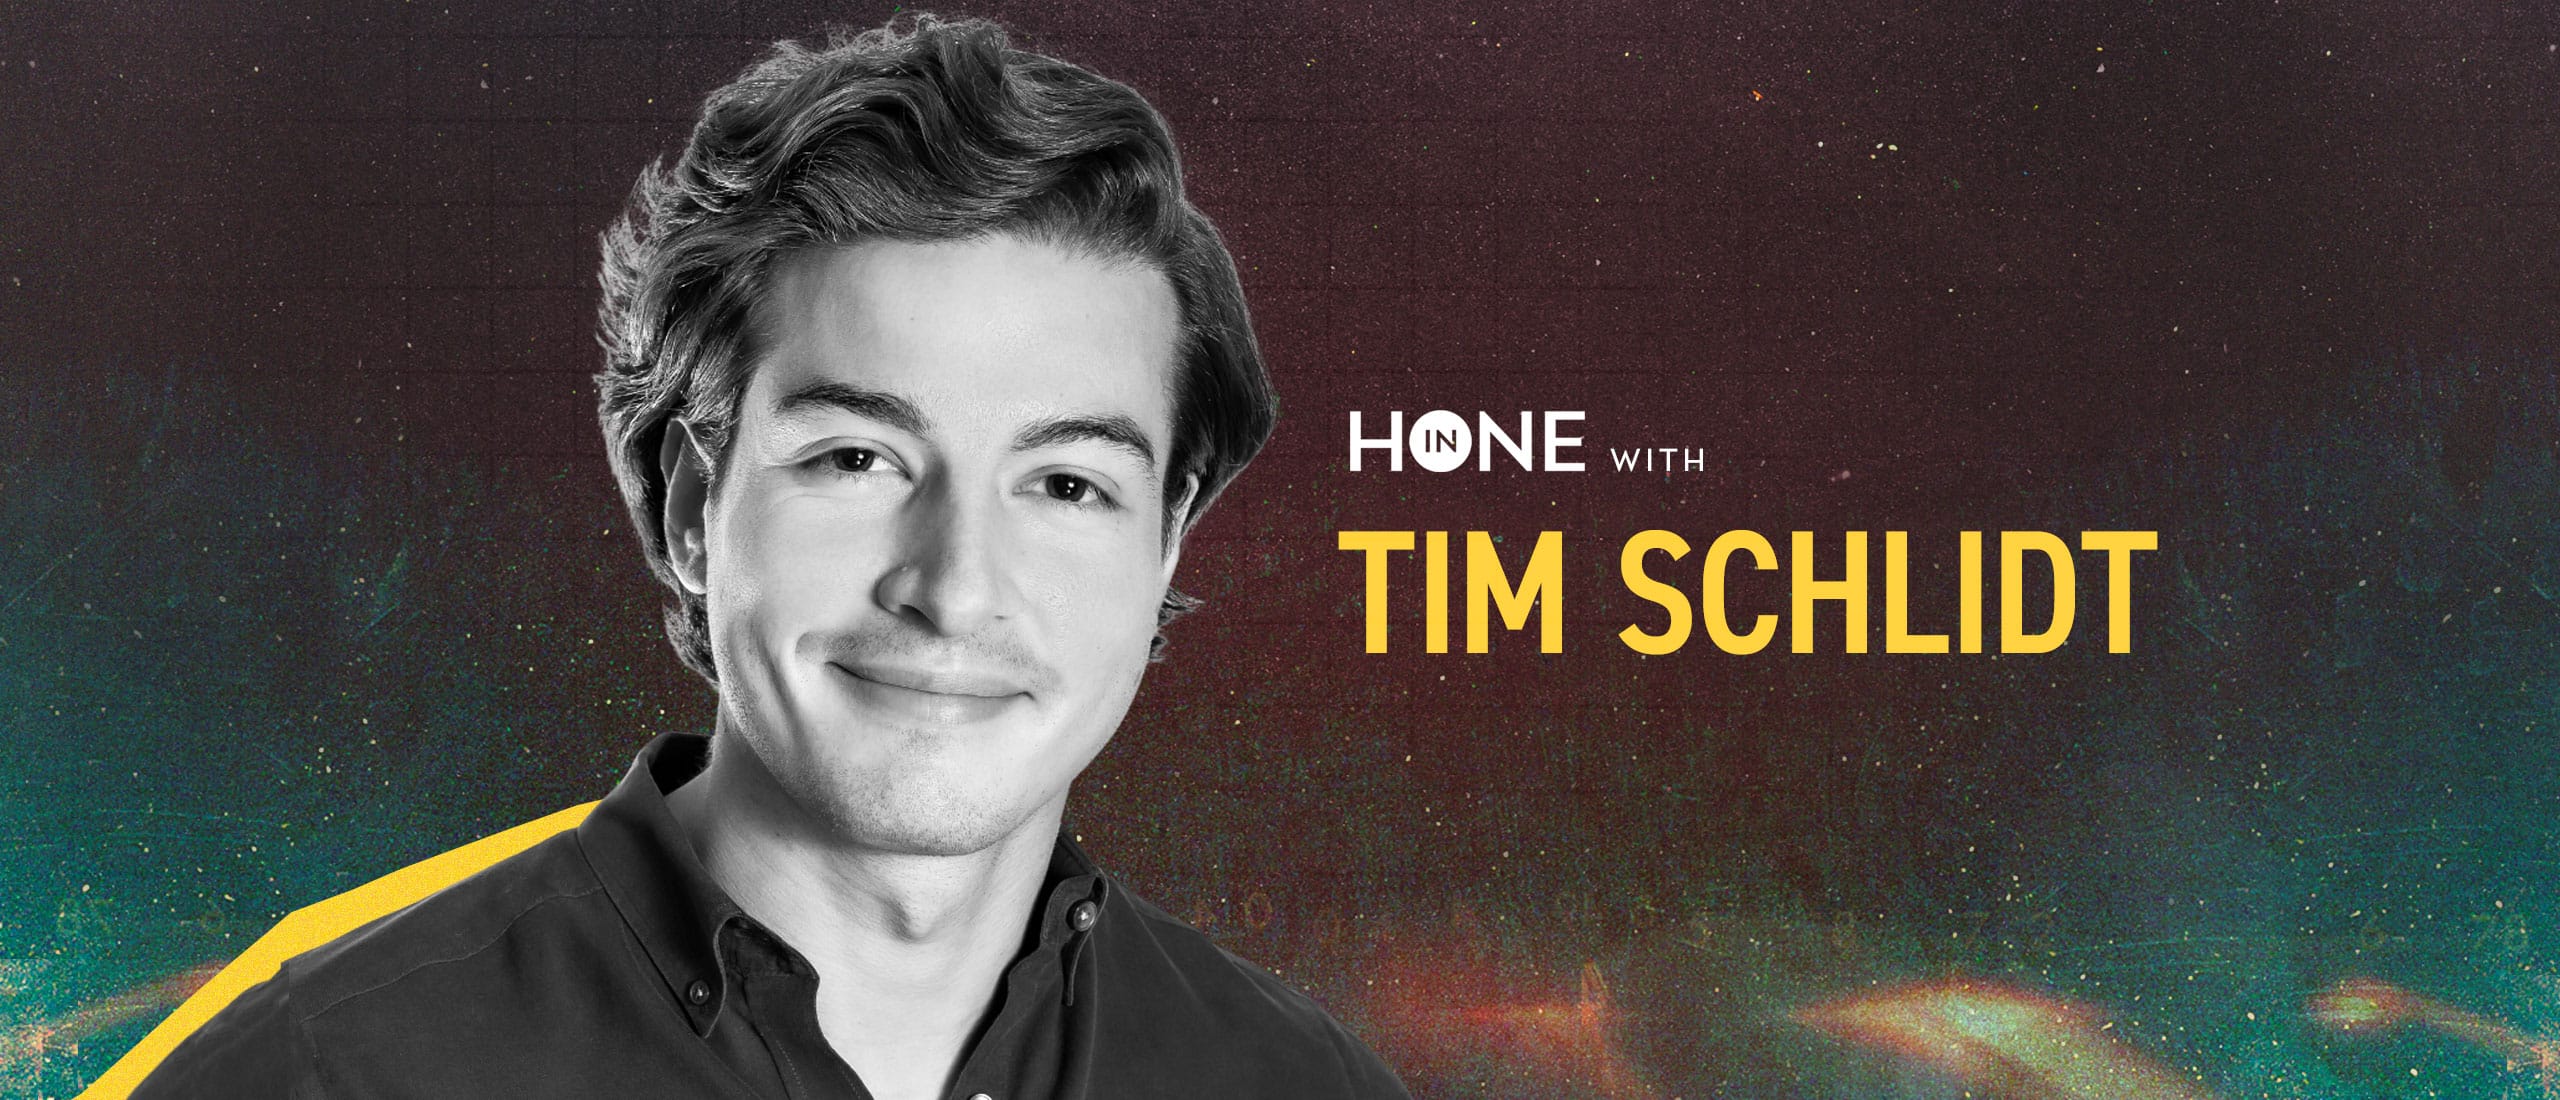 Tim Schlidt next to the Hone In logo